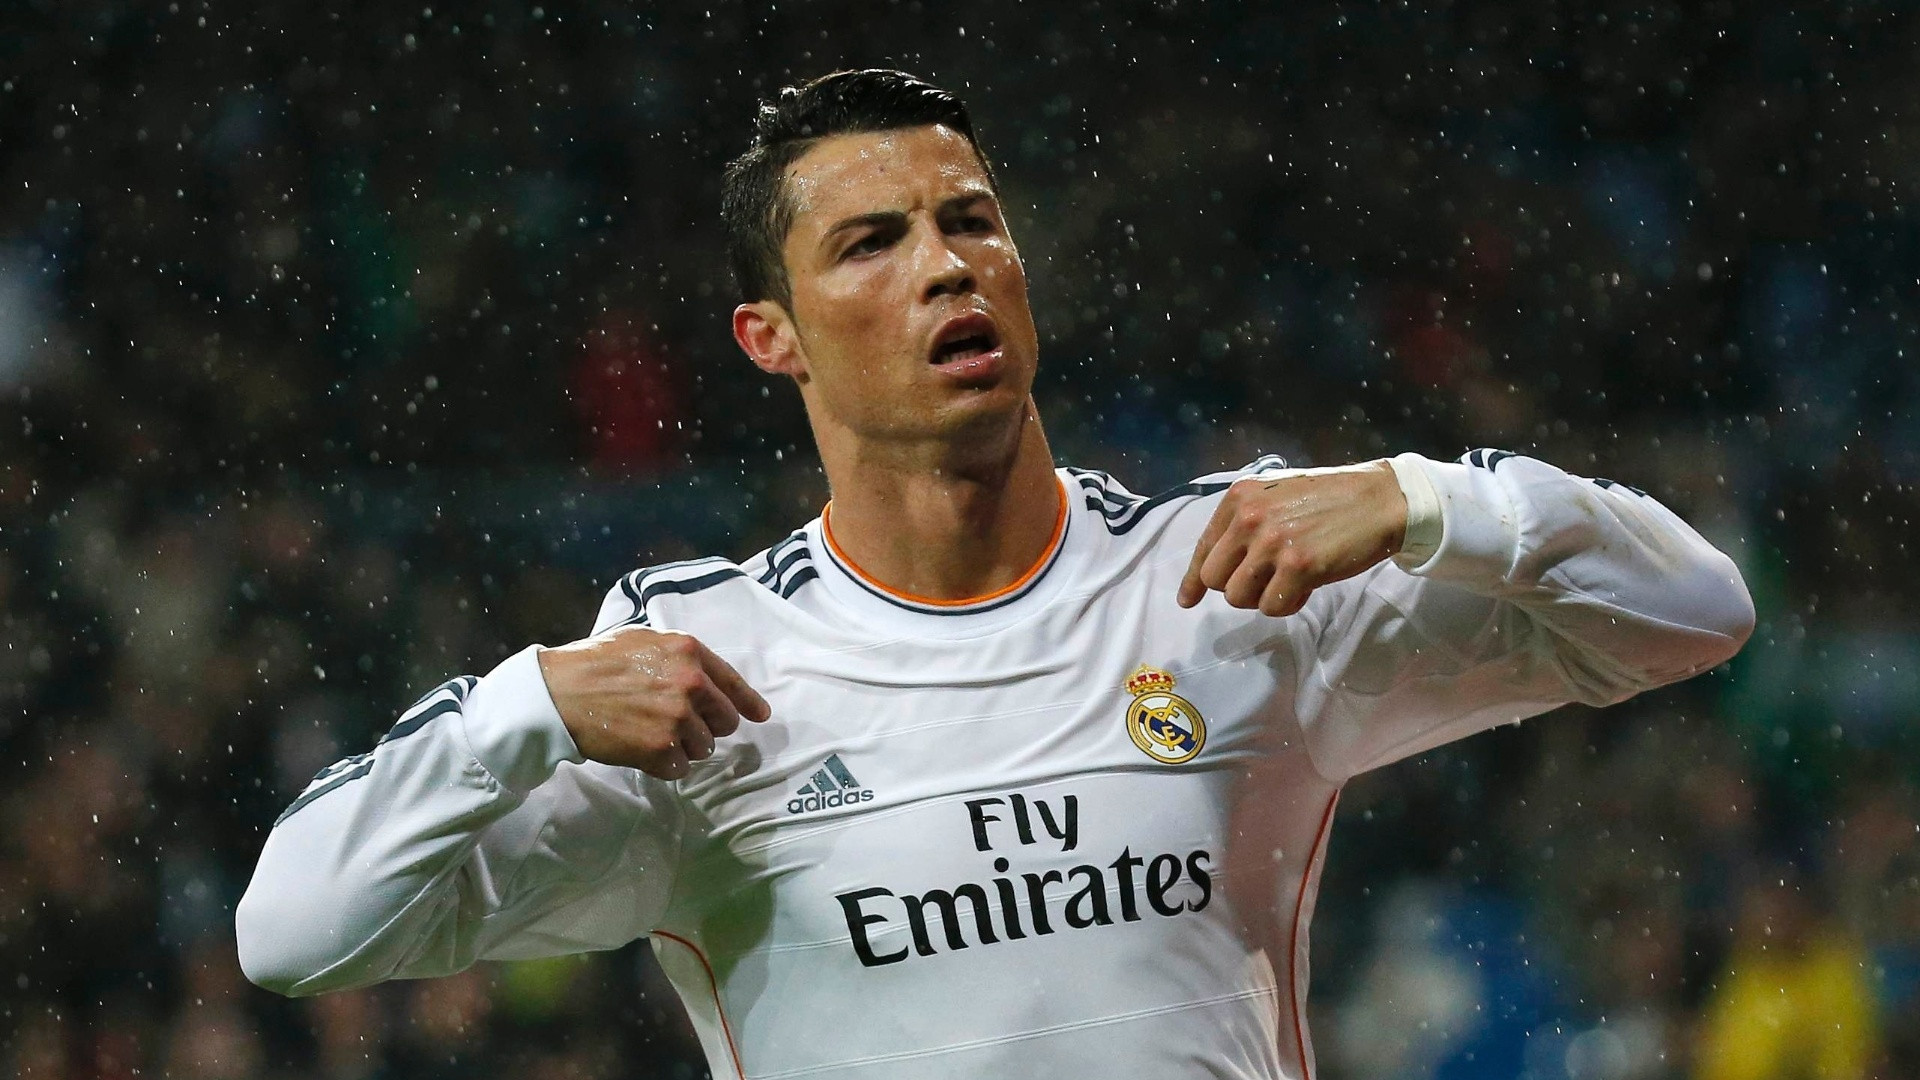 Ronaldo'nun Real Madrid forması ile bir görseli.